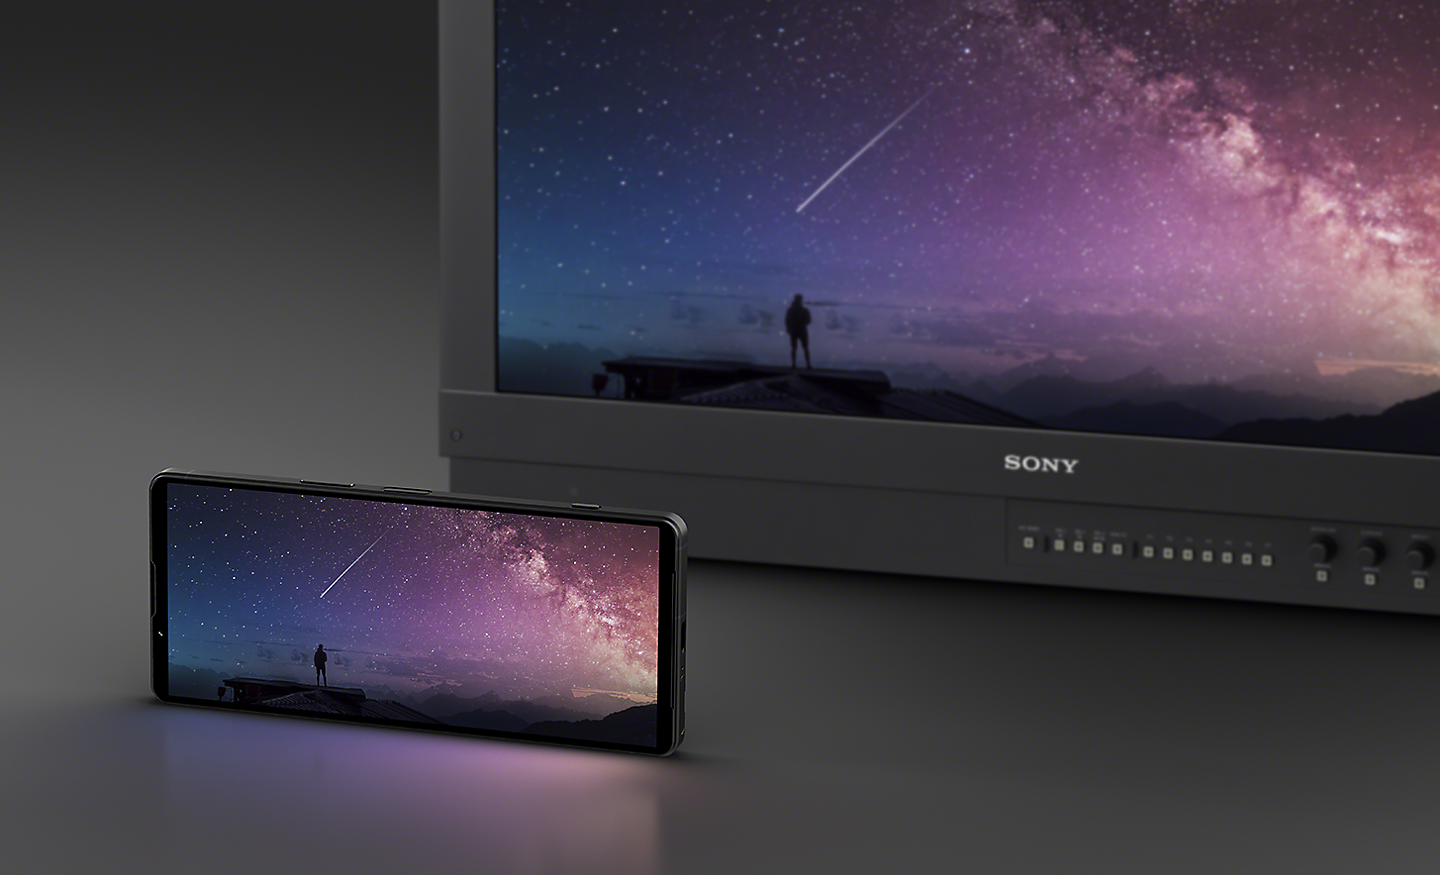 En Xperia 1 V i liggande position framför en Sony-färgskärm för professionellt bruk – båda visar samma bild av natthimlen